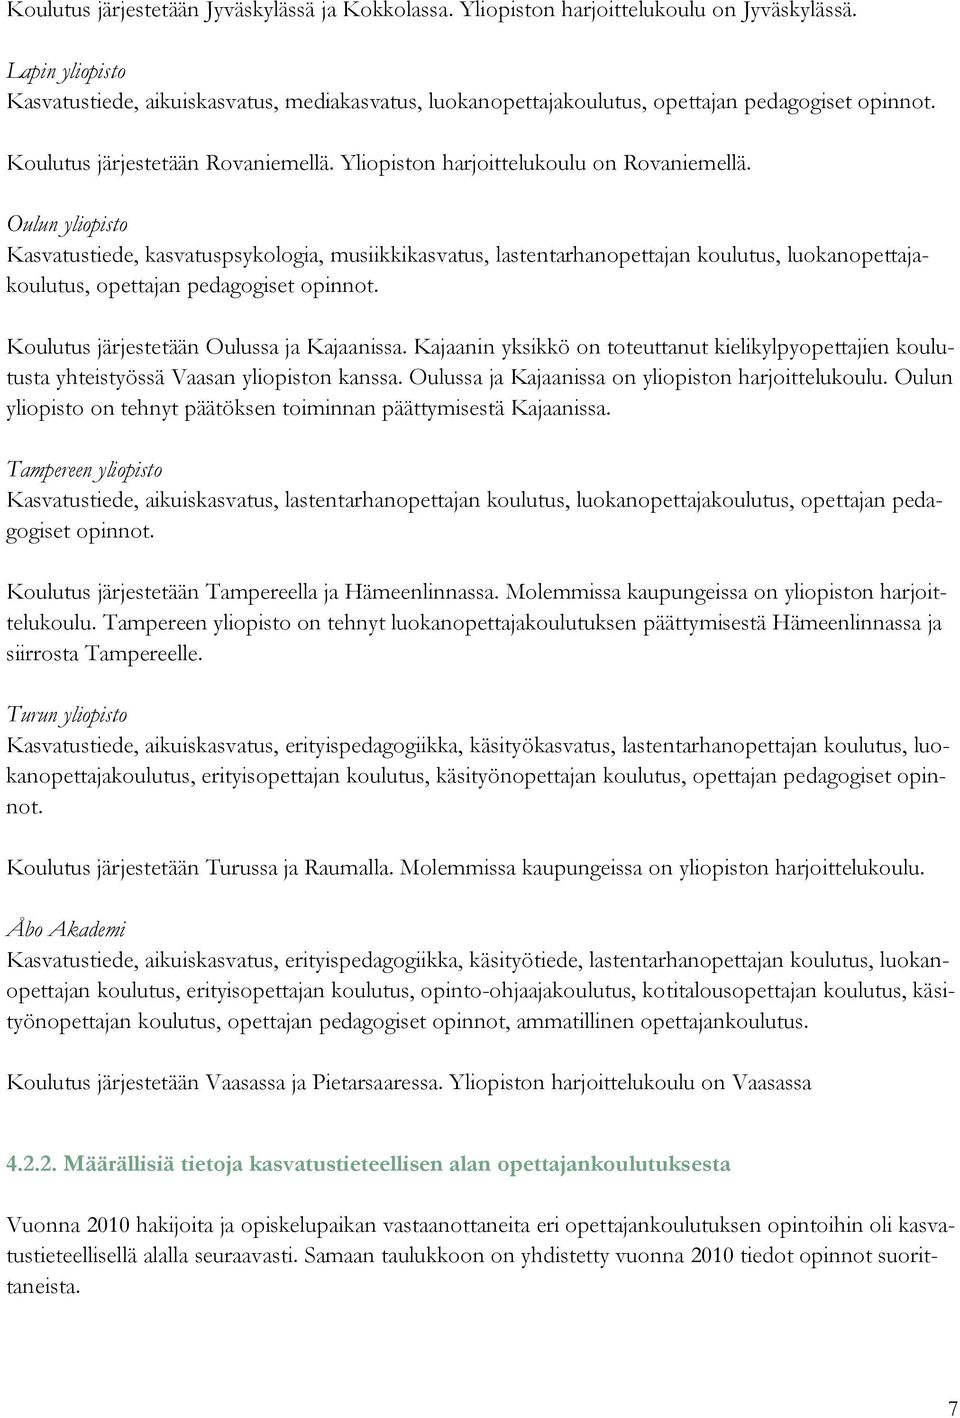 Oulun yliopisto Kasvatustiede, kasvatuspsykologia, musiikkikasvatus, lastentarhanopettajan koulutus, luokanopettajakoulutus, opettajan pedagogiset opinnot. Koulutus järjestetään Oulussa ja Kajaanissa.